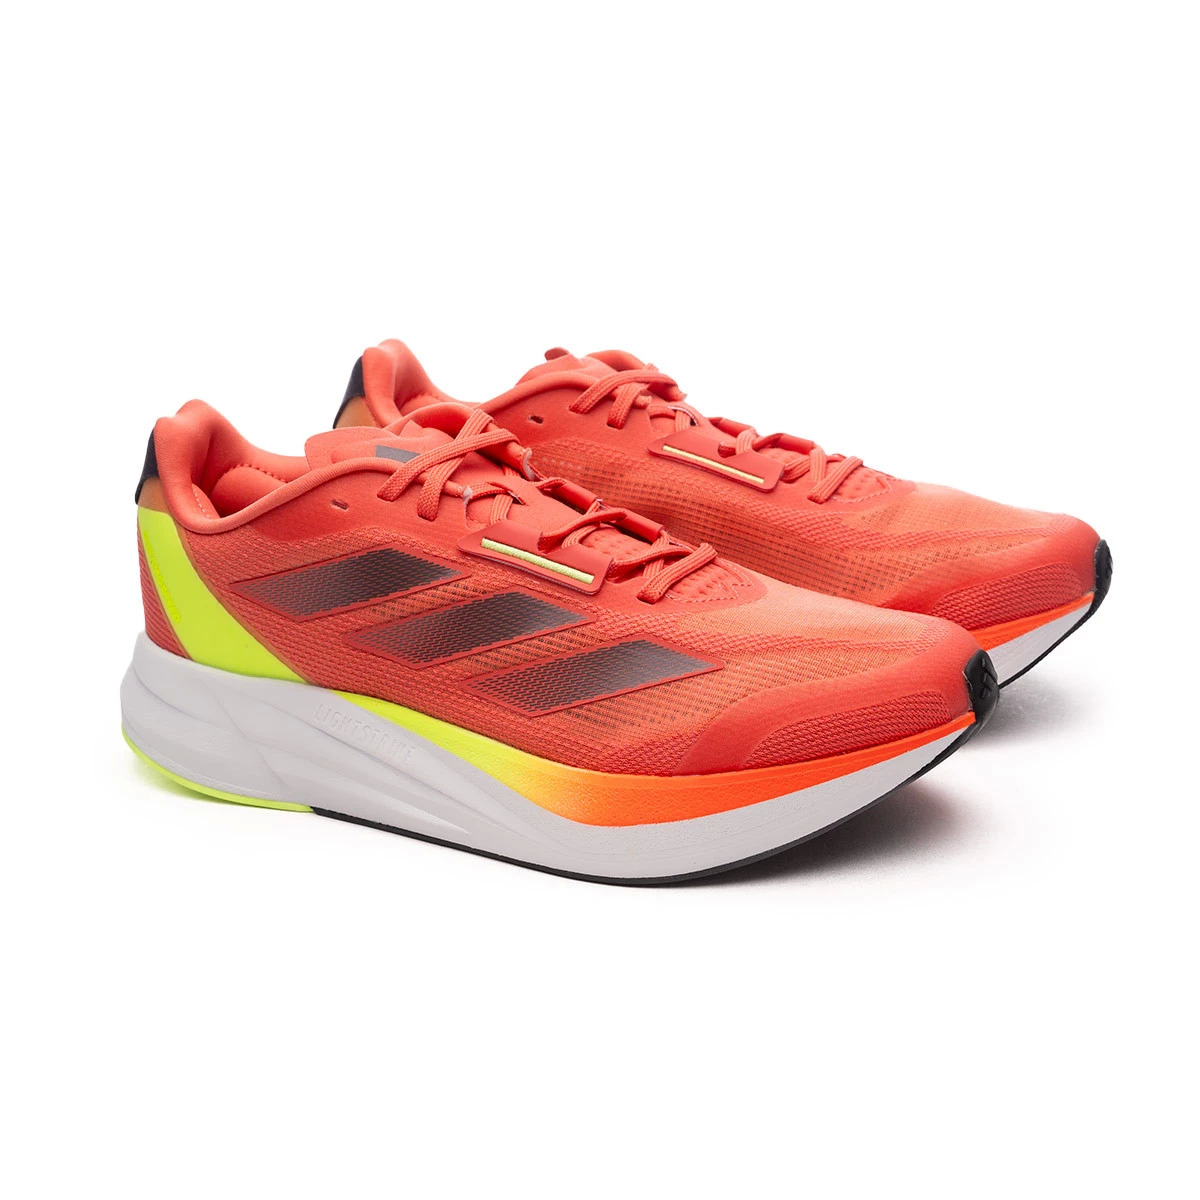 adidas Men's & Women's Duramo Speed Running Shoes $45 + Free Shipping